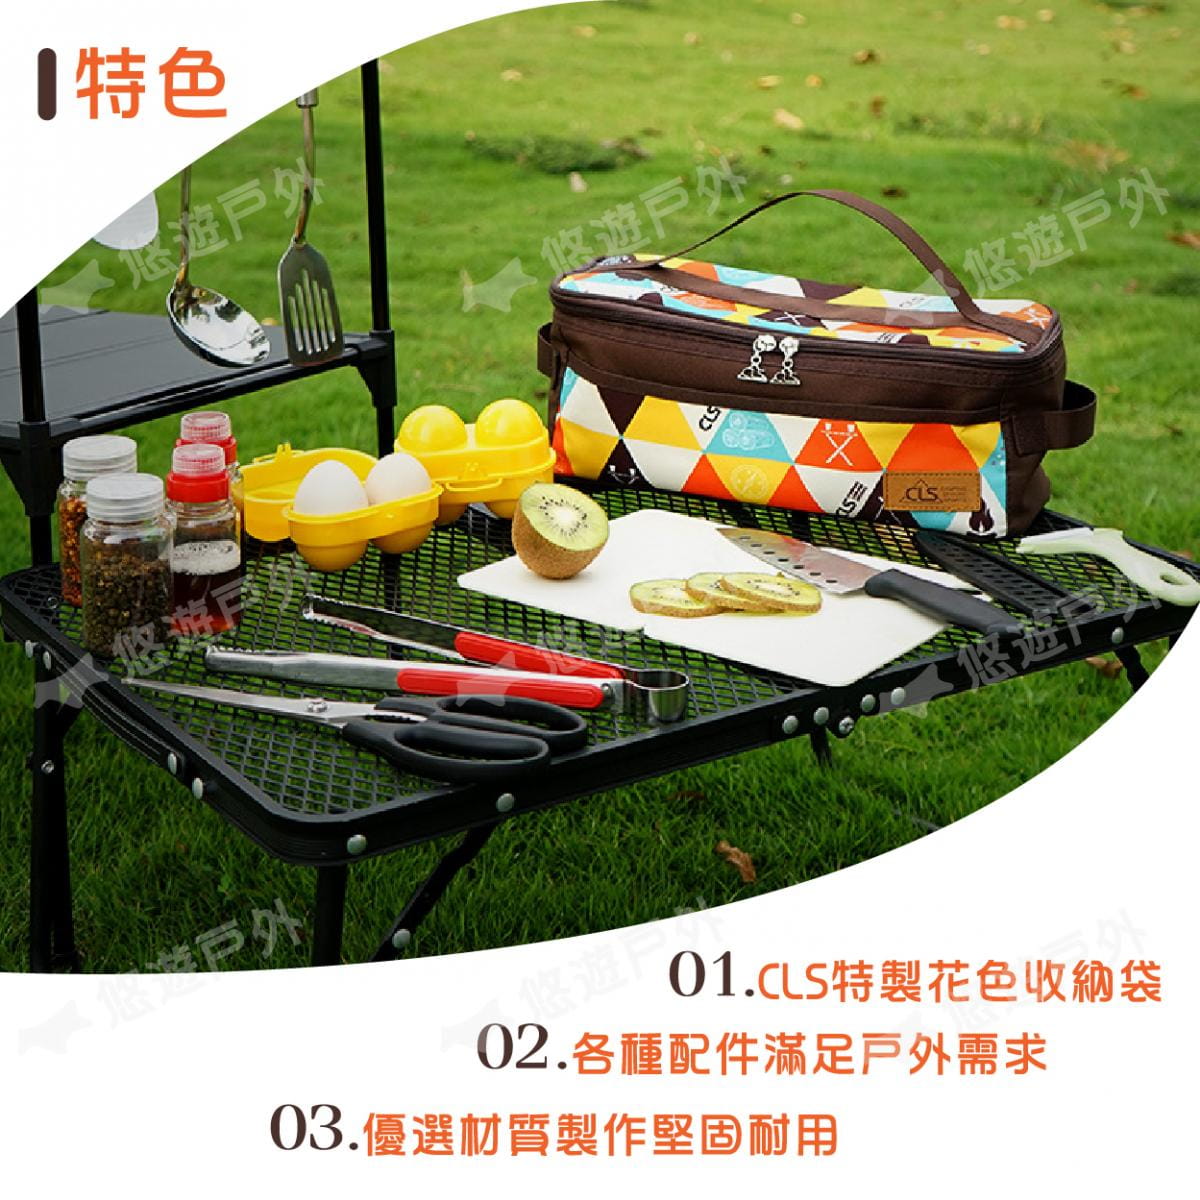 【CLS】廚房炊具11件組 三種花色 (悠遊戶外) 1